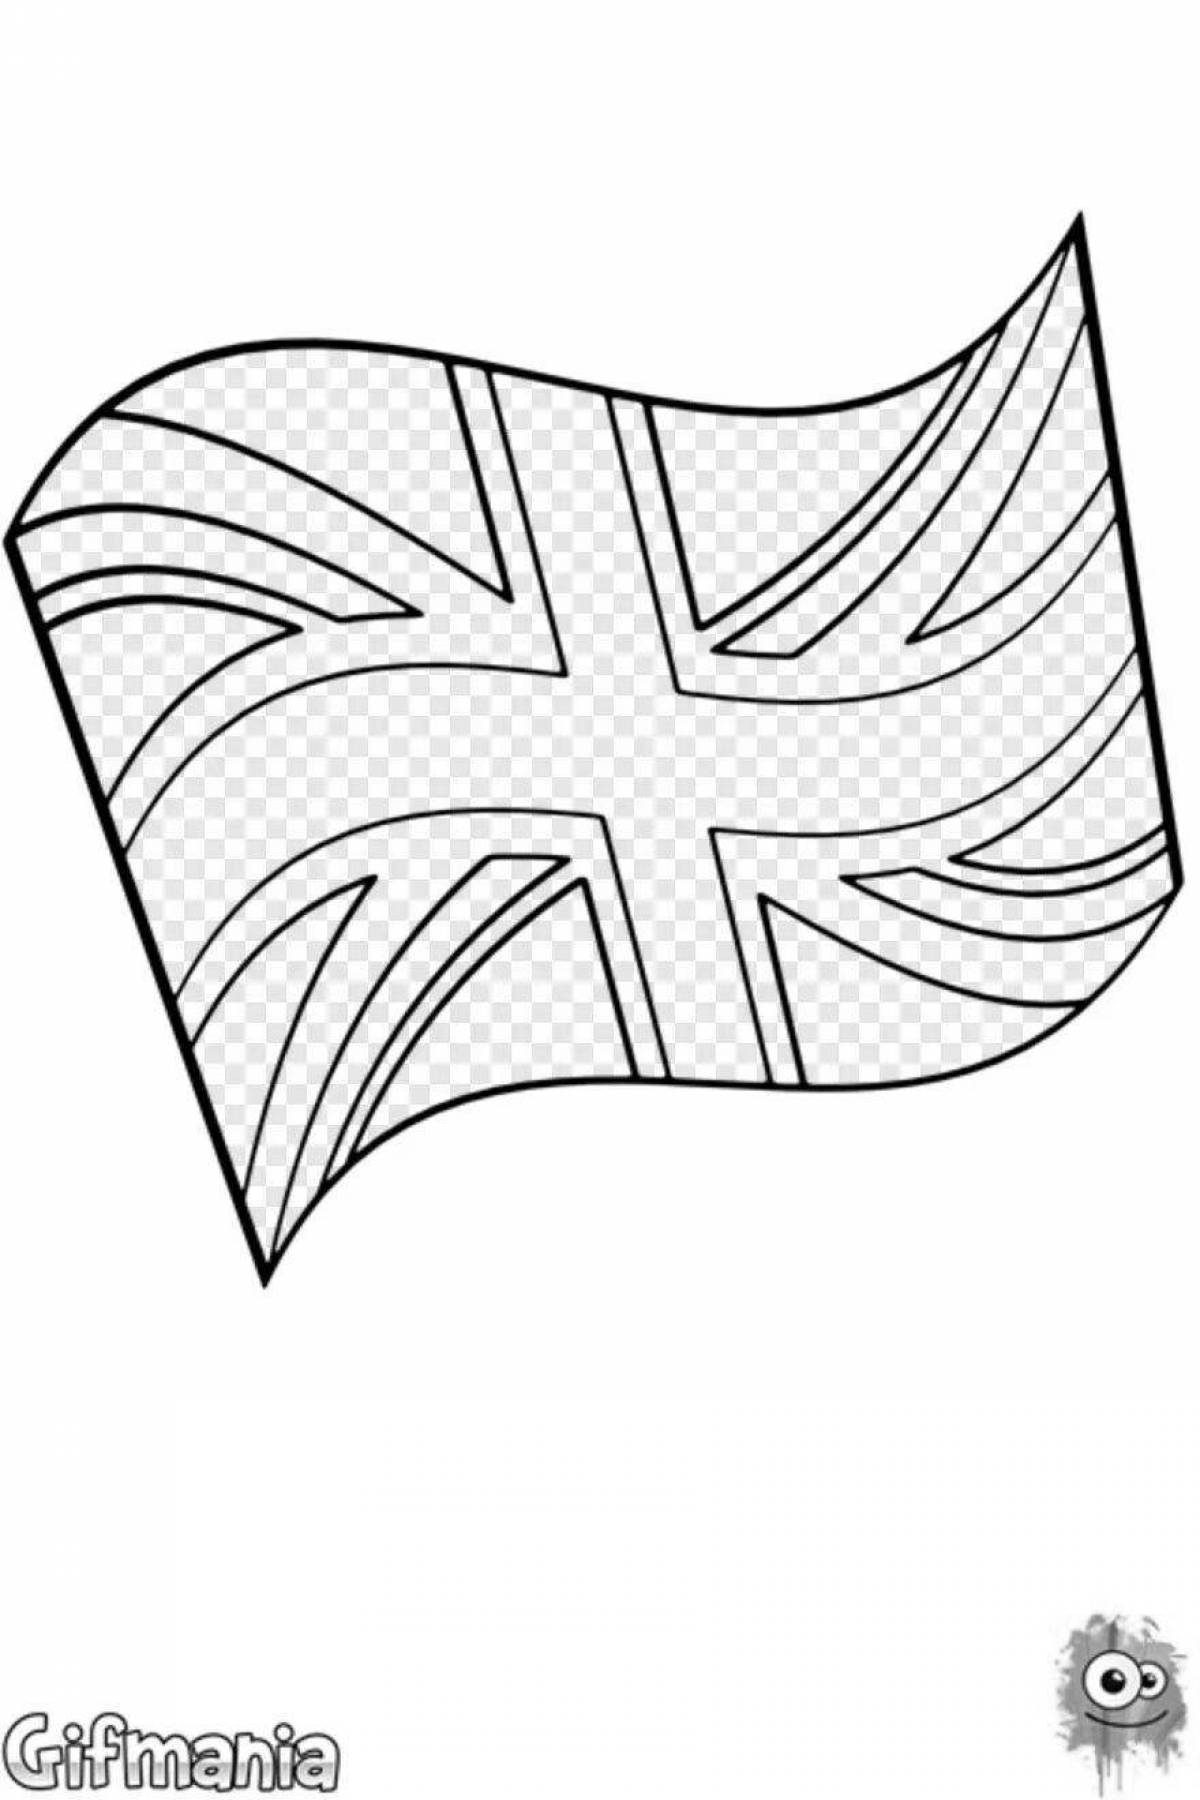 Увлекательная раскраска британского флага